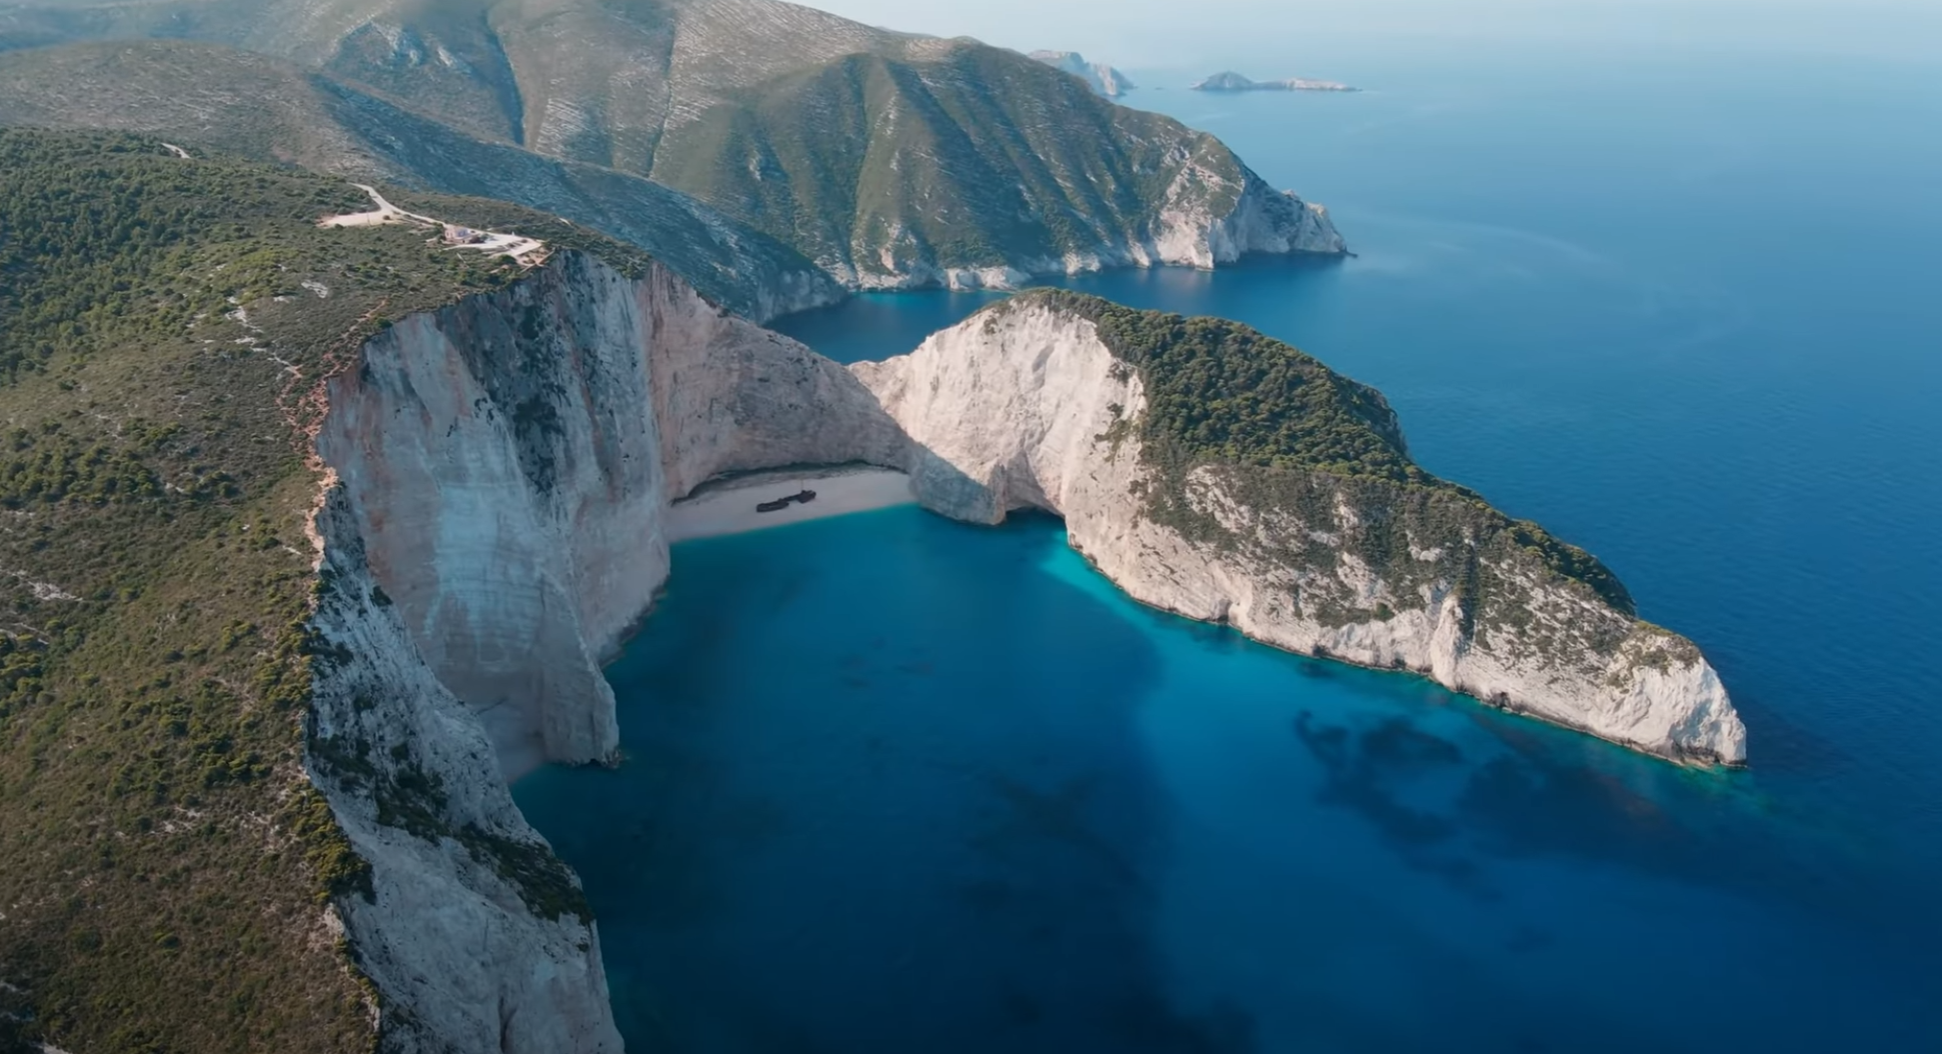 Voyage en Grèce: financez votre rêve avec le crédit voyage - Voyage en Grèce: financez votre rêve avec le crédit voyage